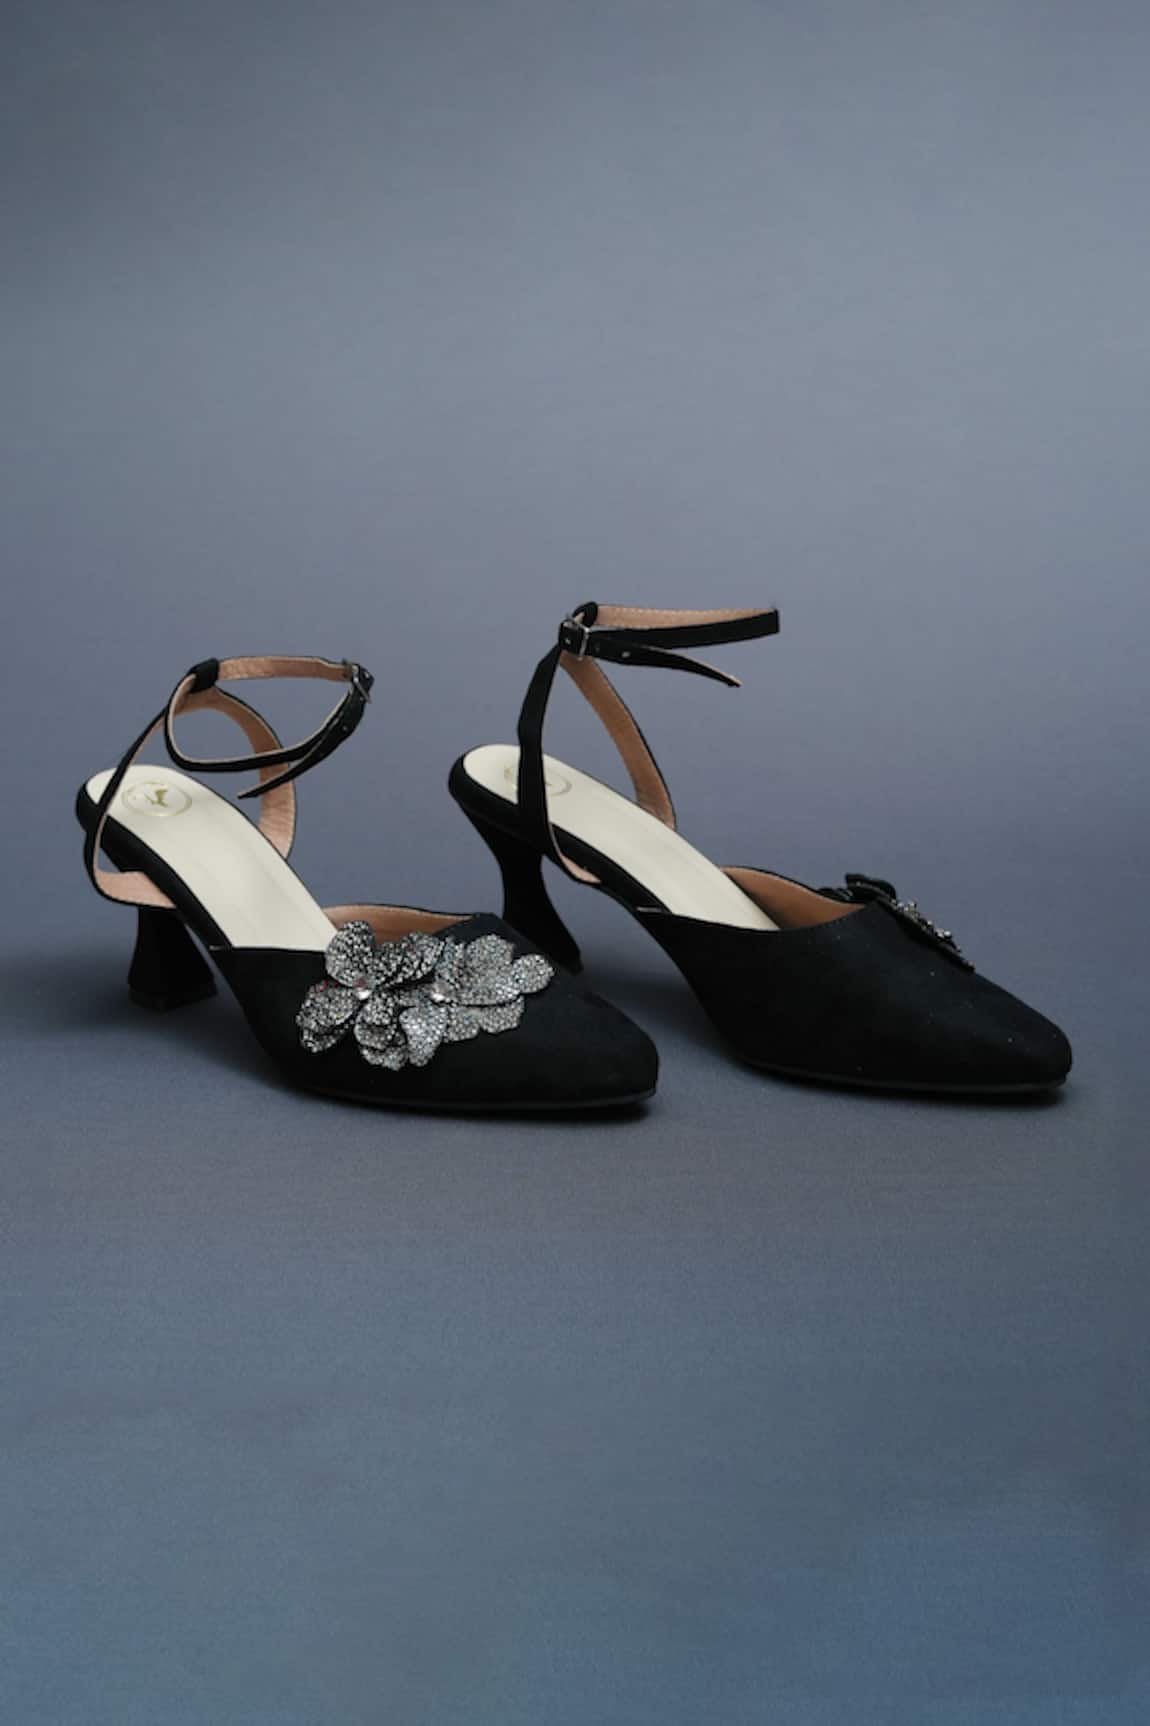 Sana K luxurious Footwear Bow Glimmering Bloom Applique Heels